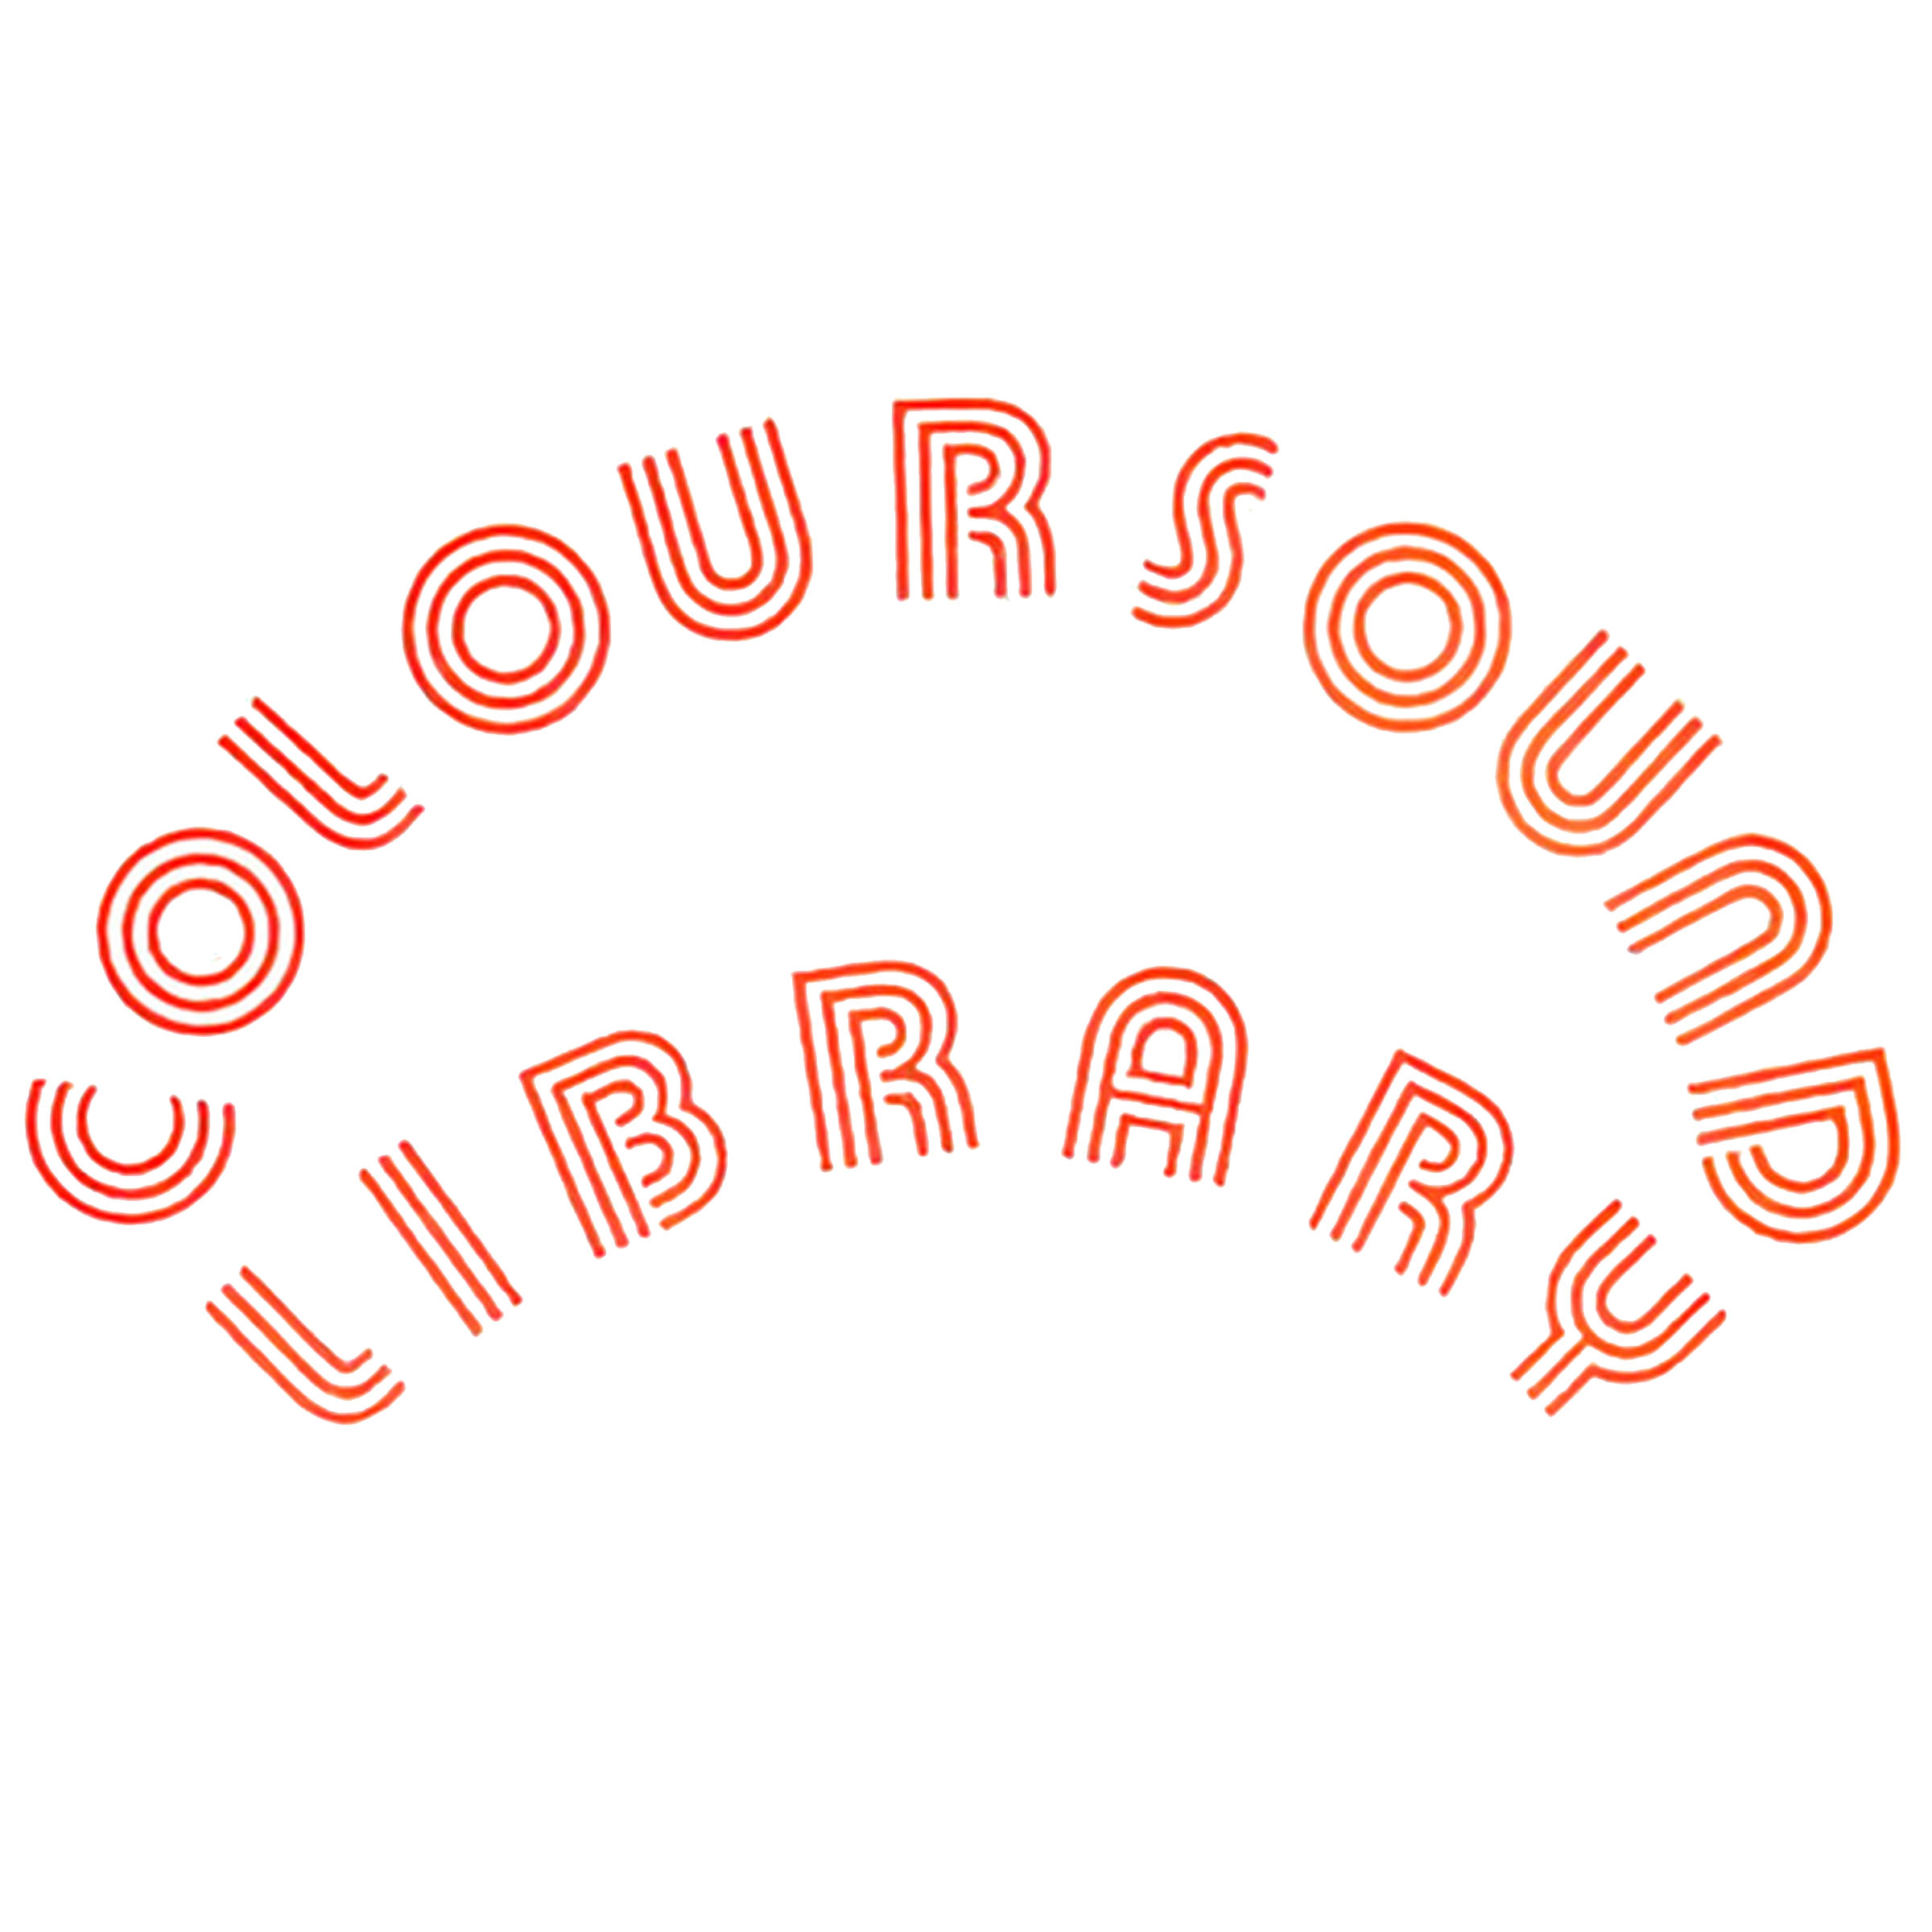 Coloursound